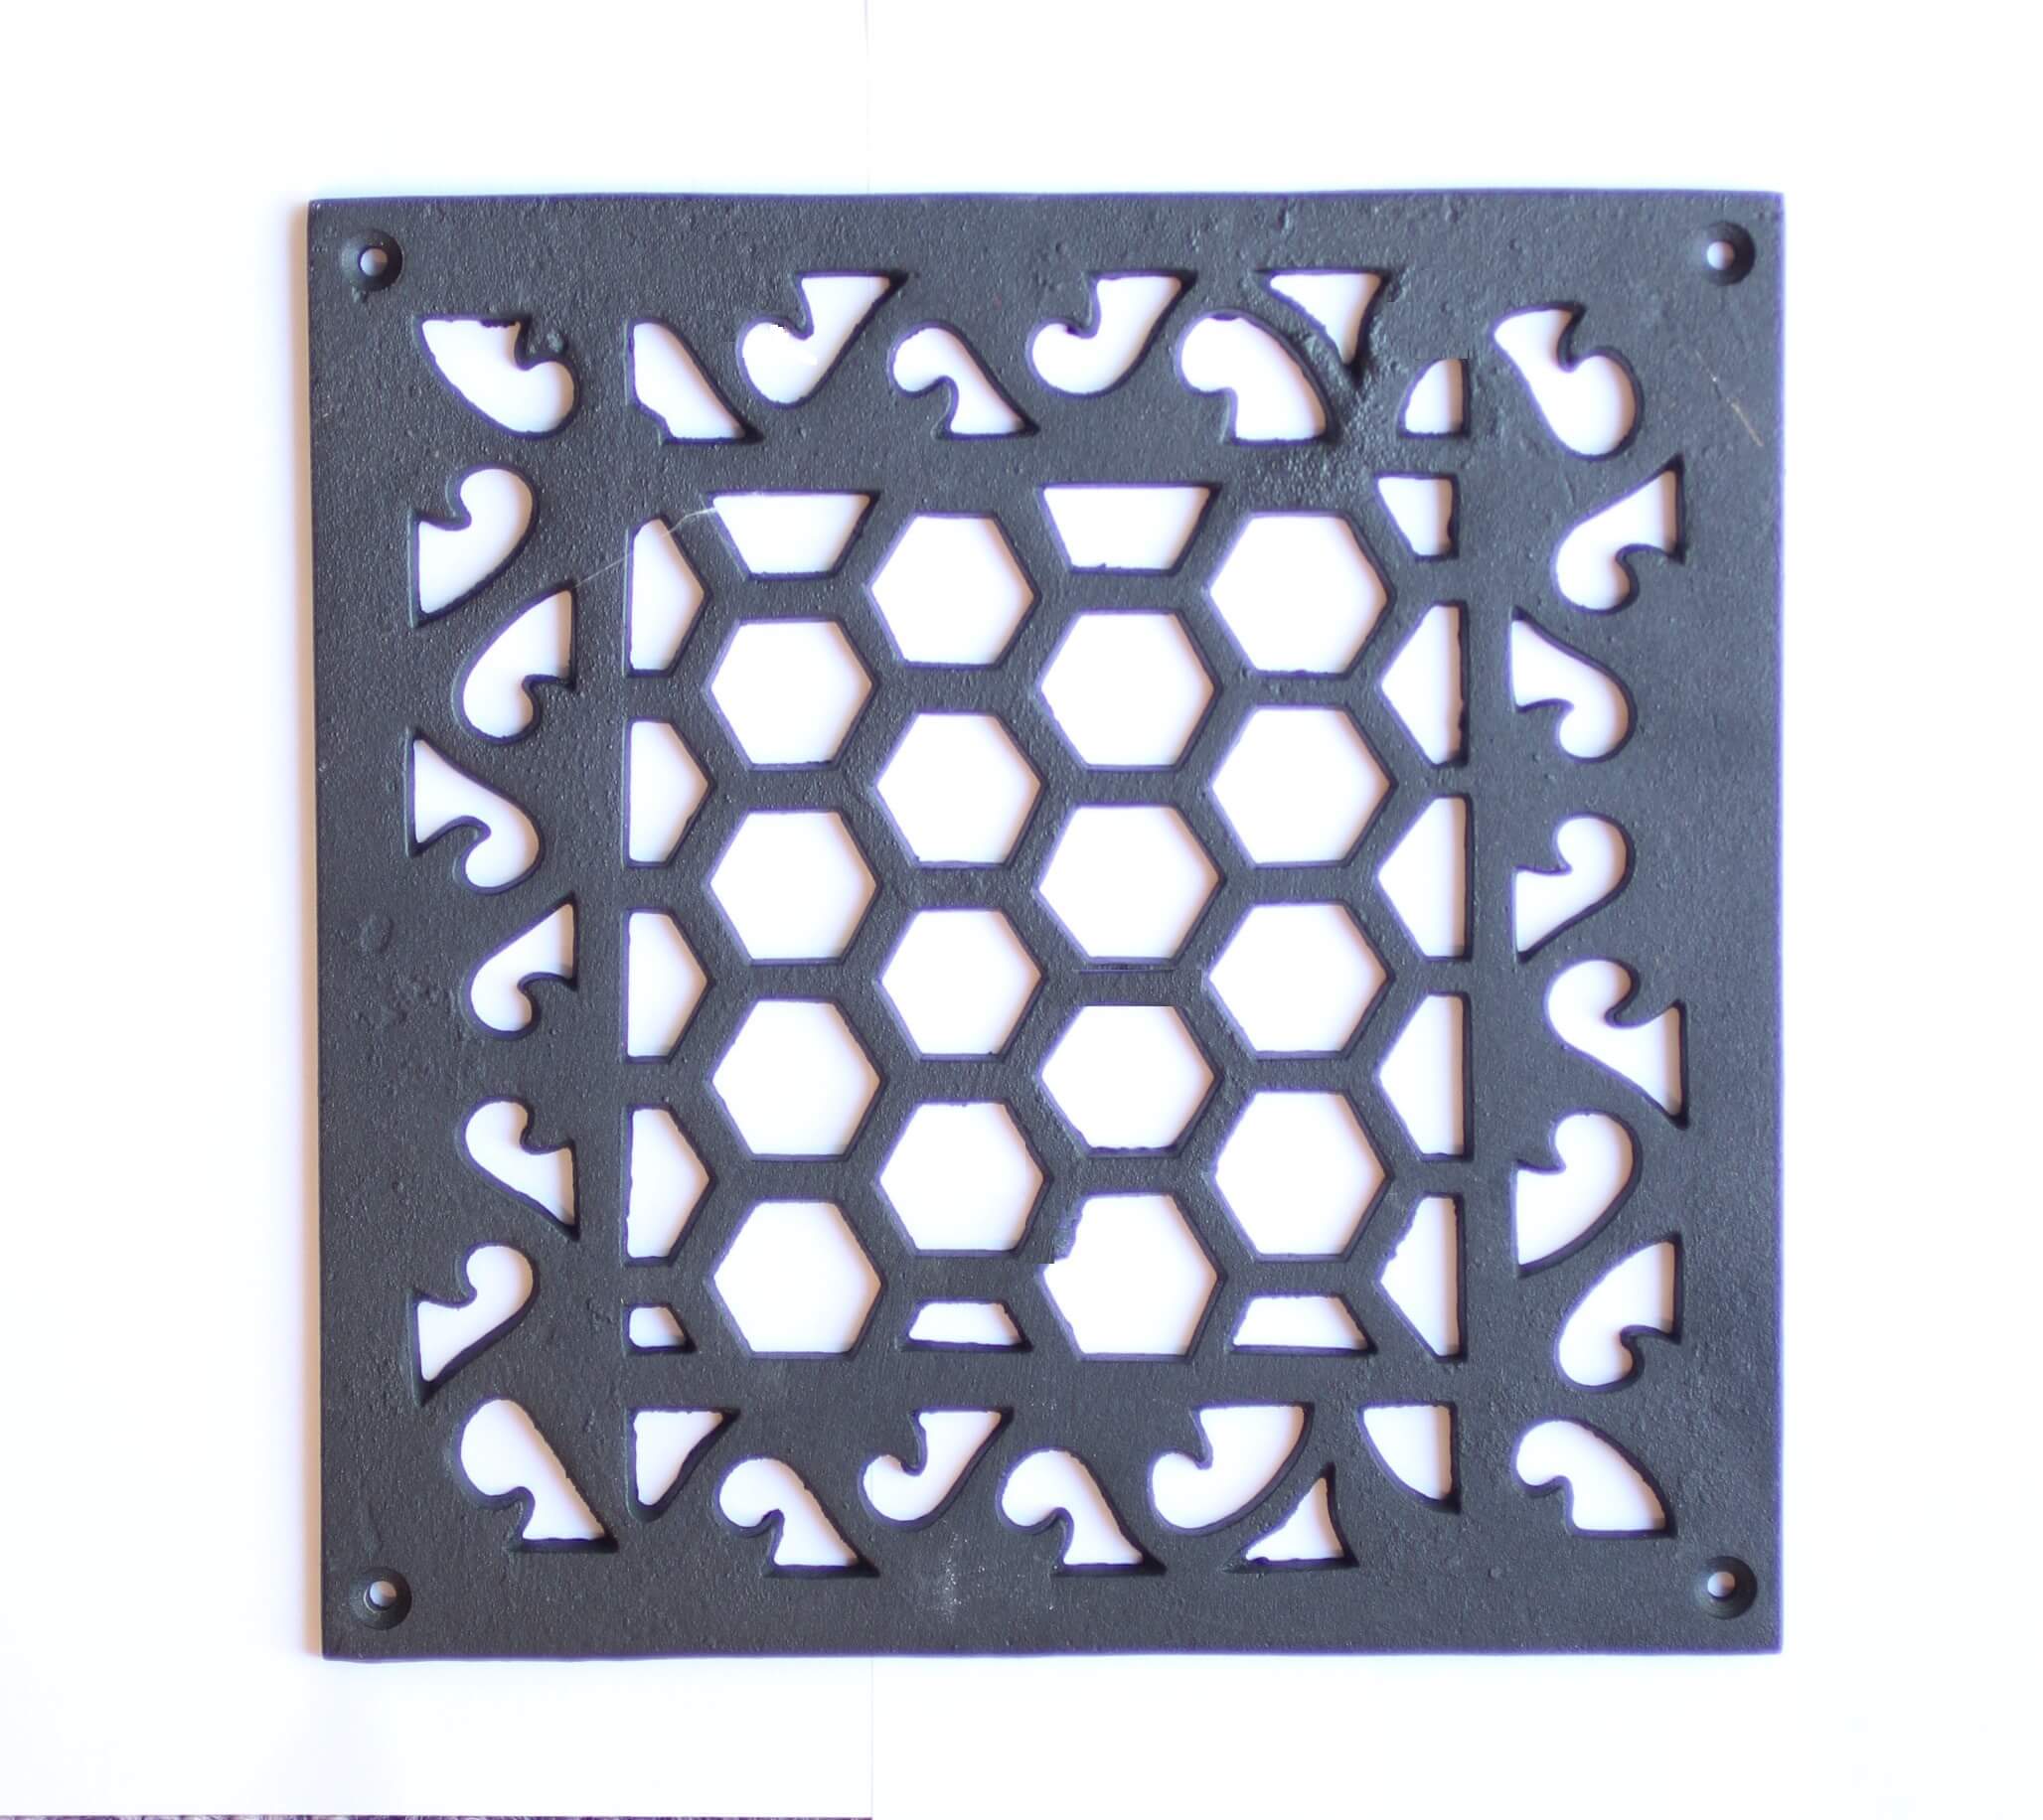 Cast iron 8-3/4" x 8-3/4" x 1/4" black square floor grate.